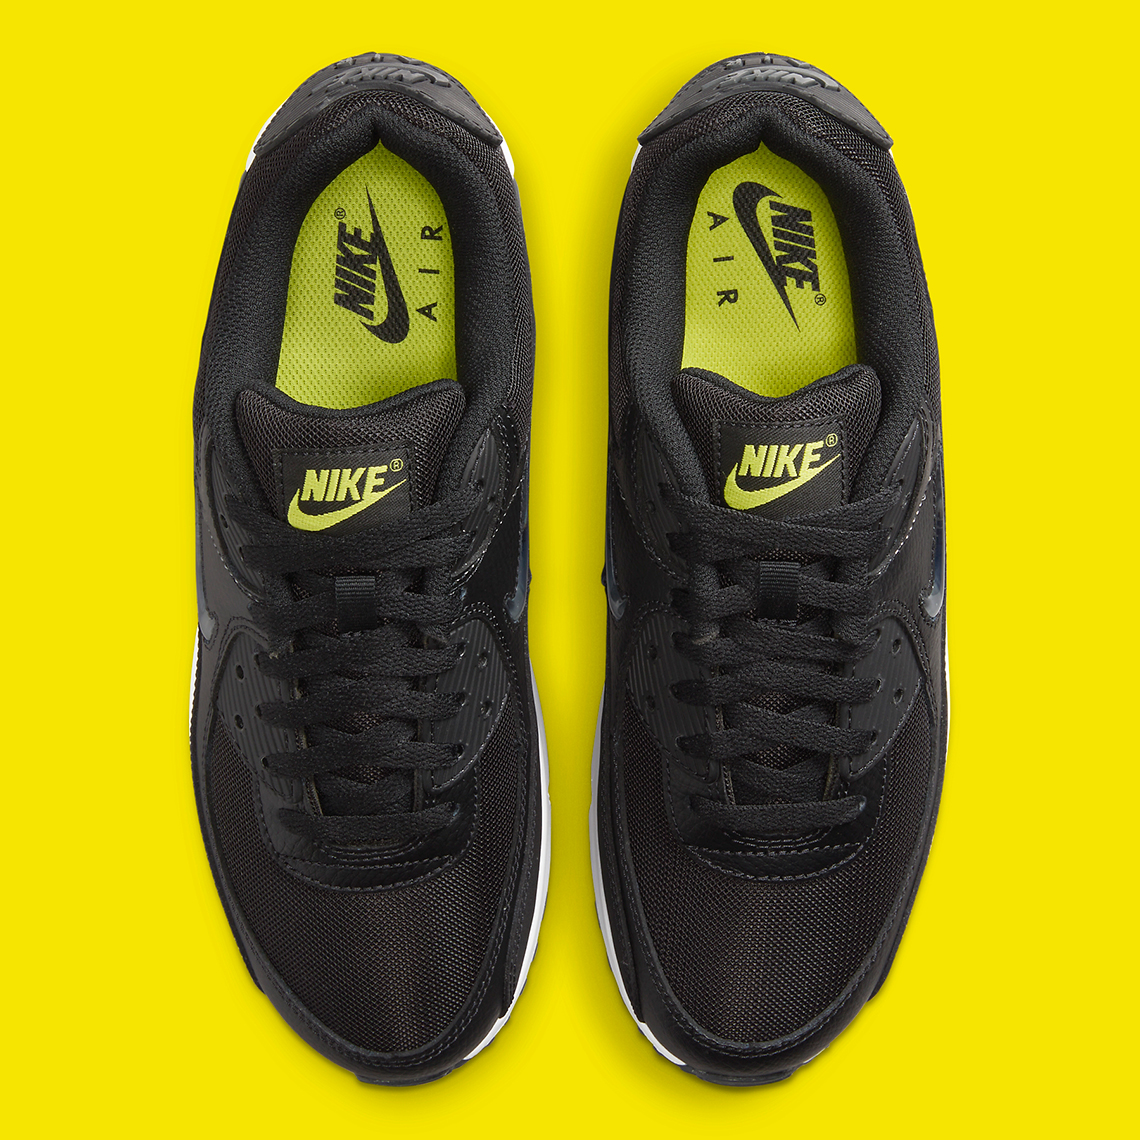 Nike Air Max 90 Jewel Black Yellow Fn8005 002 6